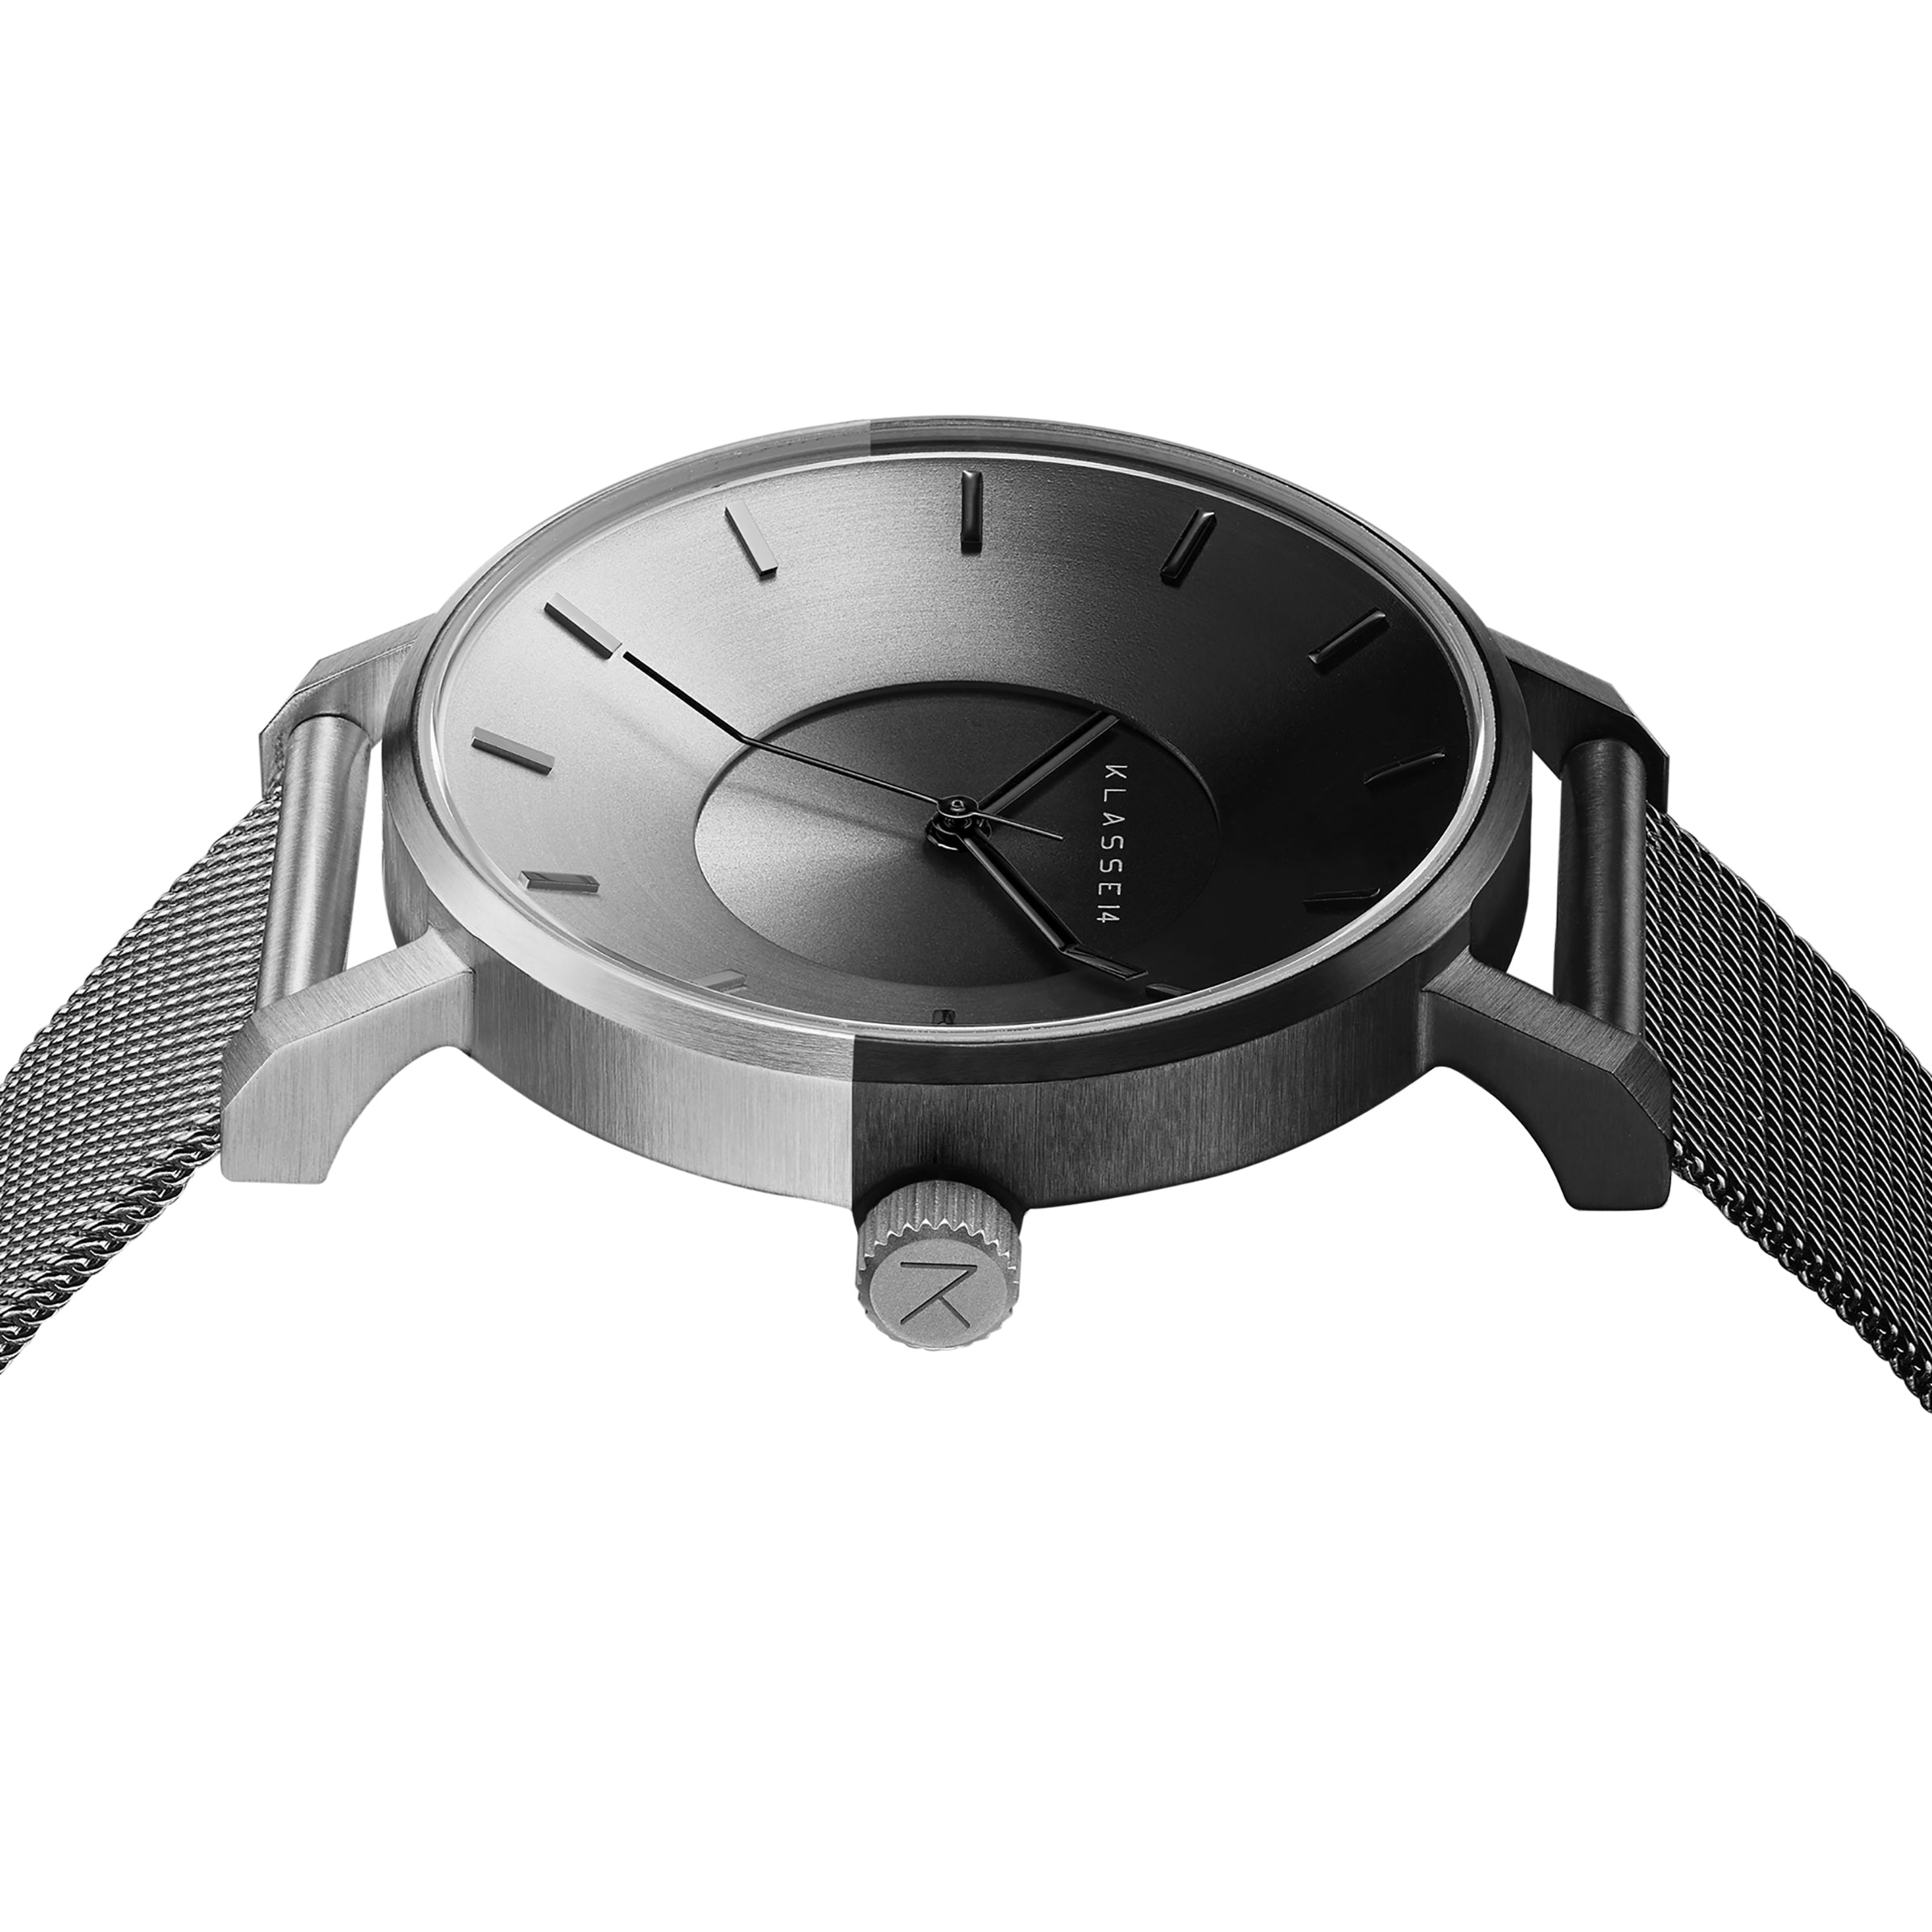 ファッションなデザイン 『新品』KLASSE14 GALAXY Volare 腕時計